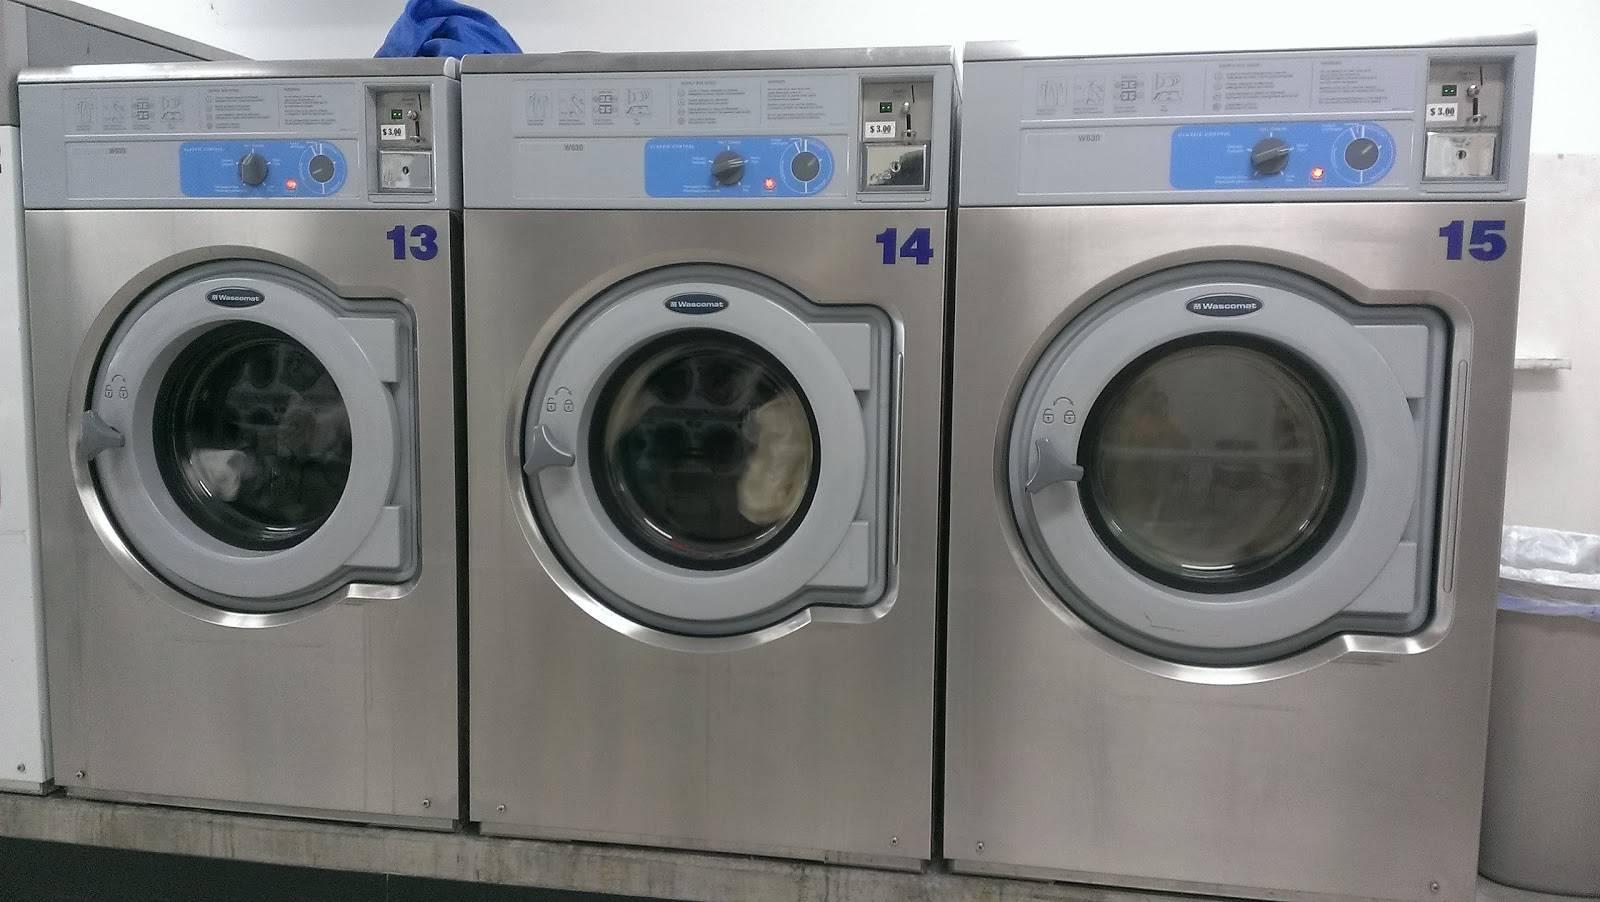 Фирмы стиральных машин - у какой лучшие стиральные агрегаты